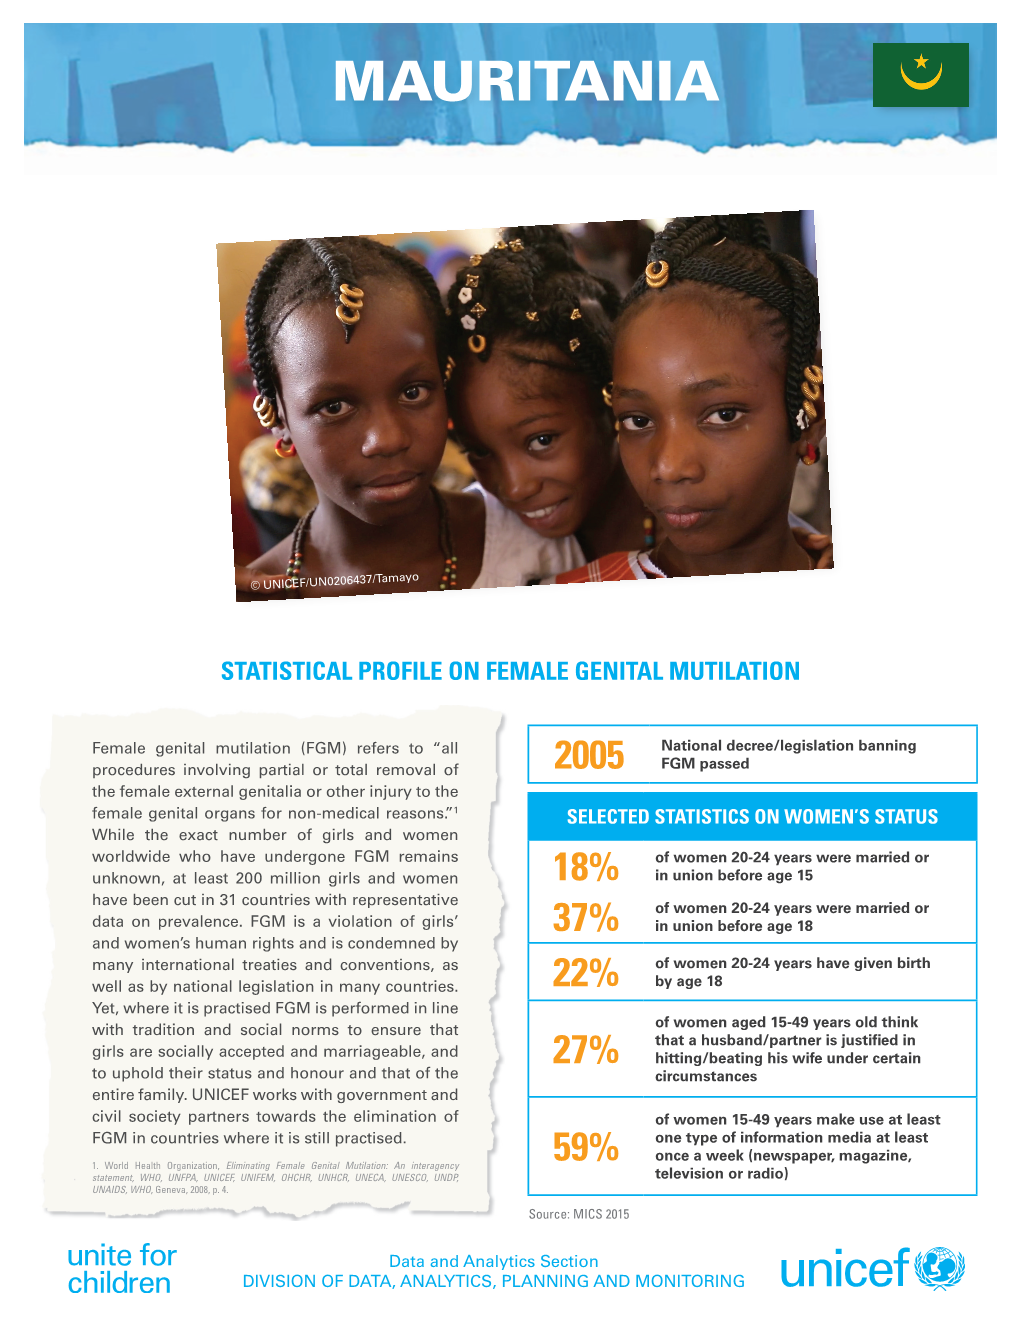 UNICEF Profile: FGM in Mauritania